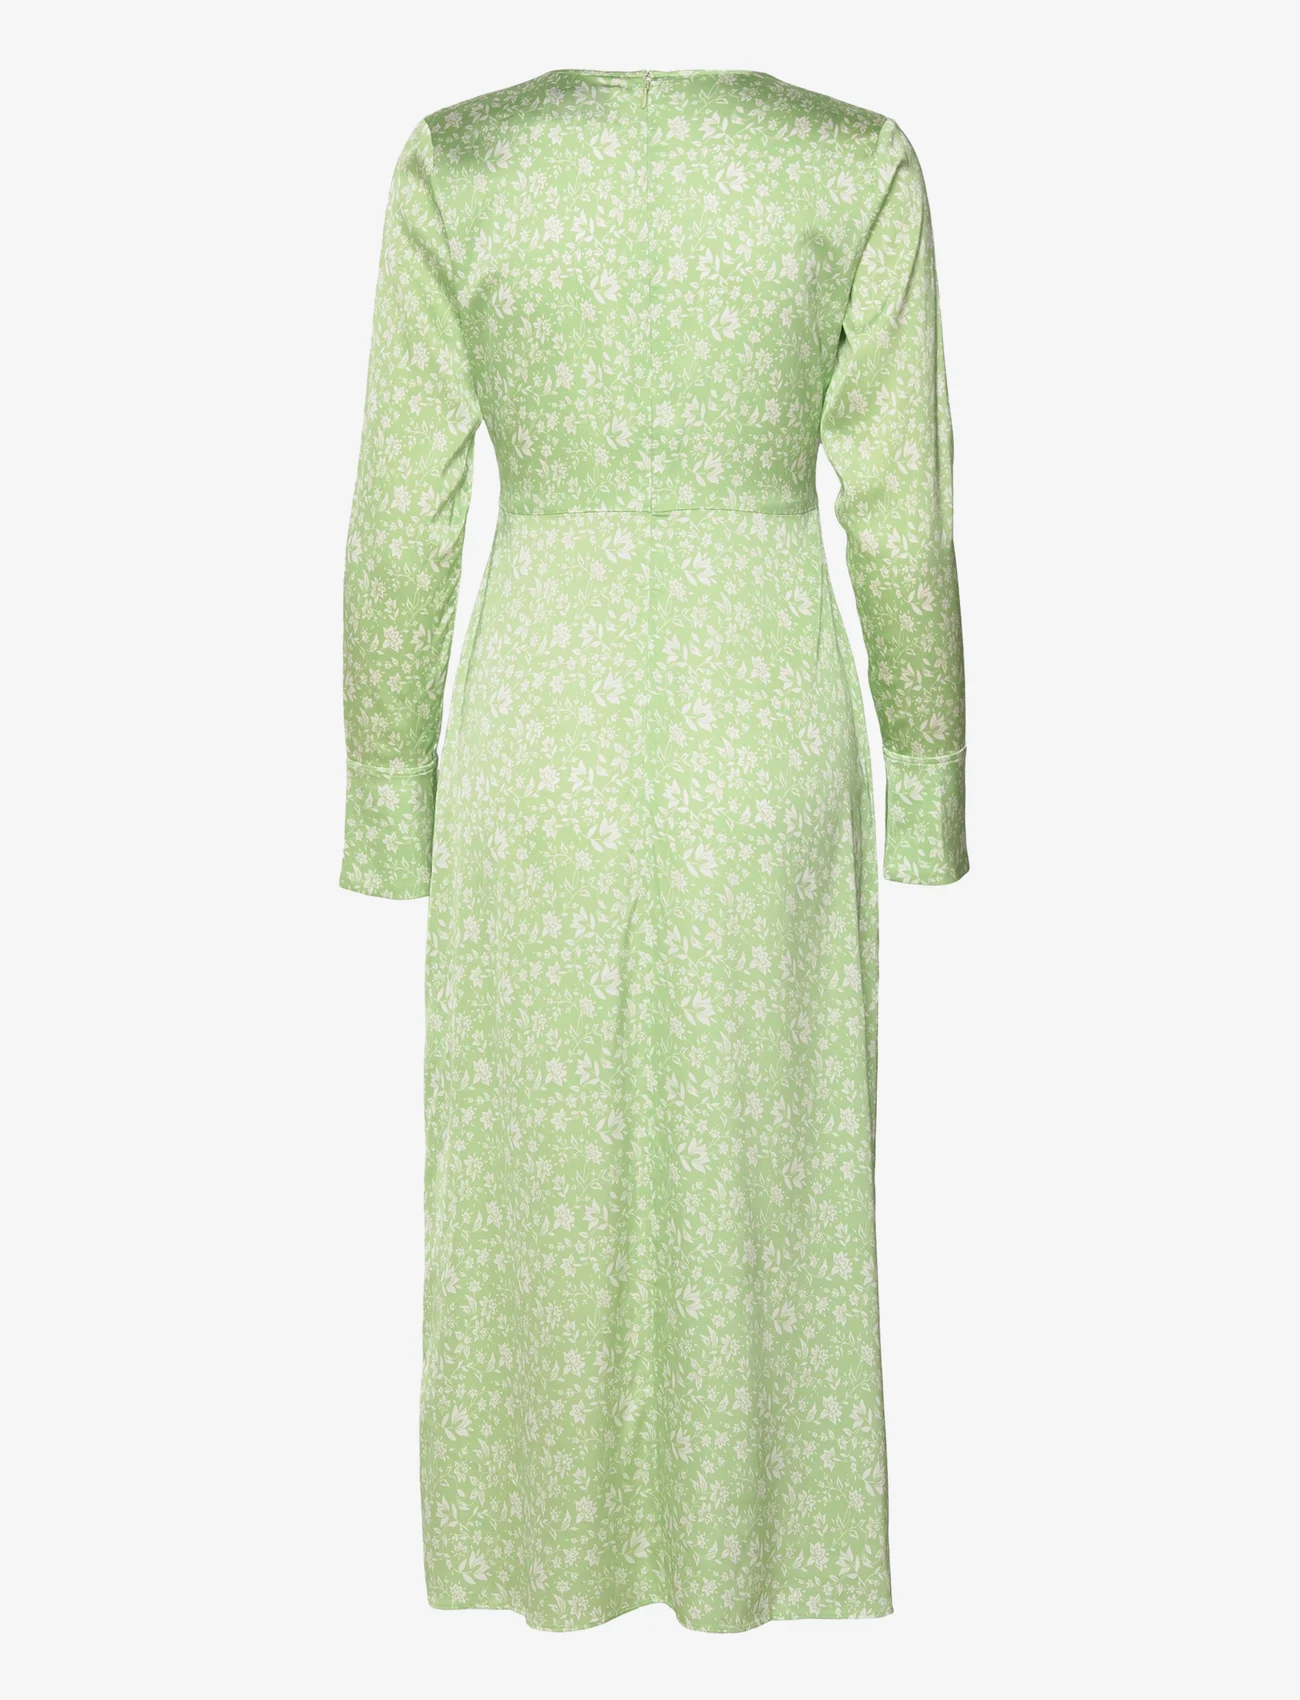 MAUD - Eve Dress - festkläder till outletpriser - faded green - 1